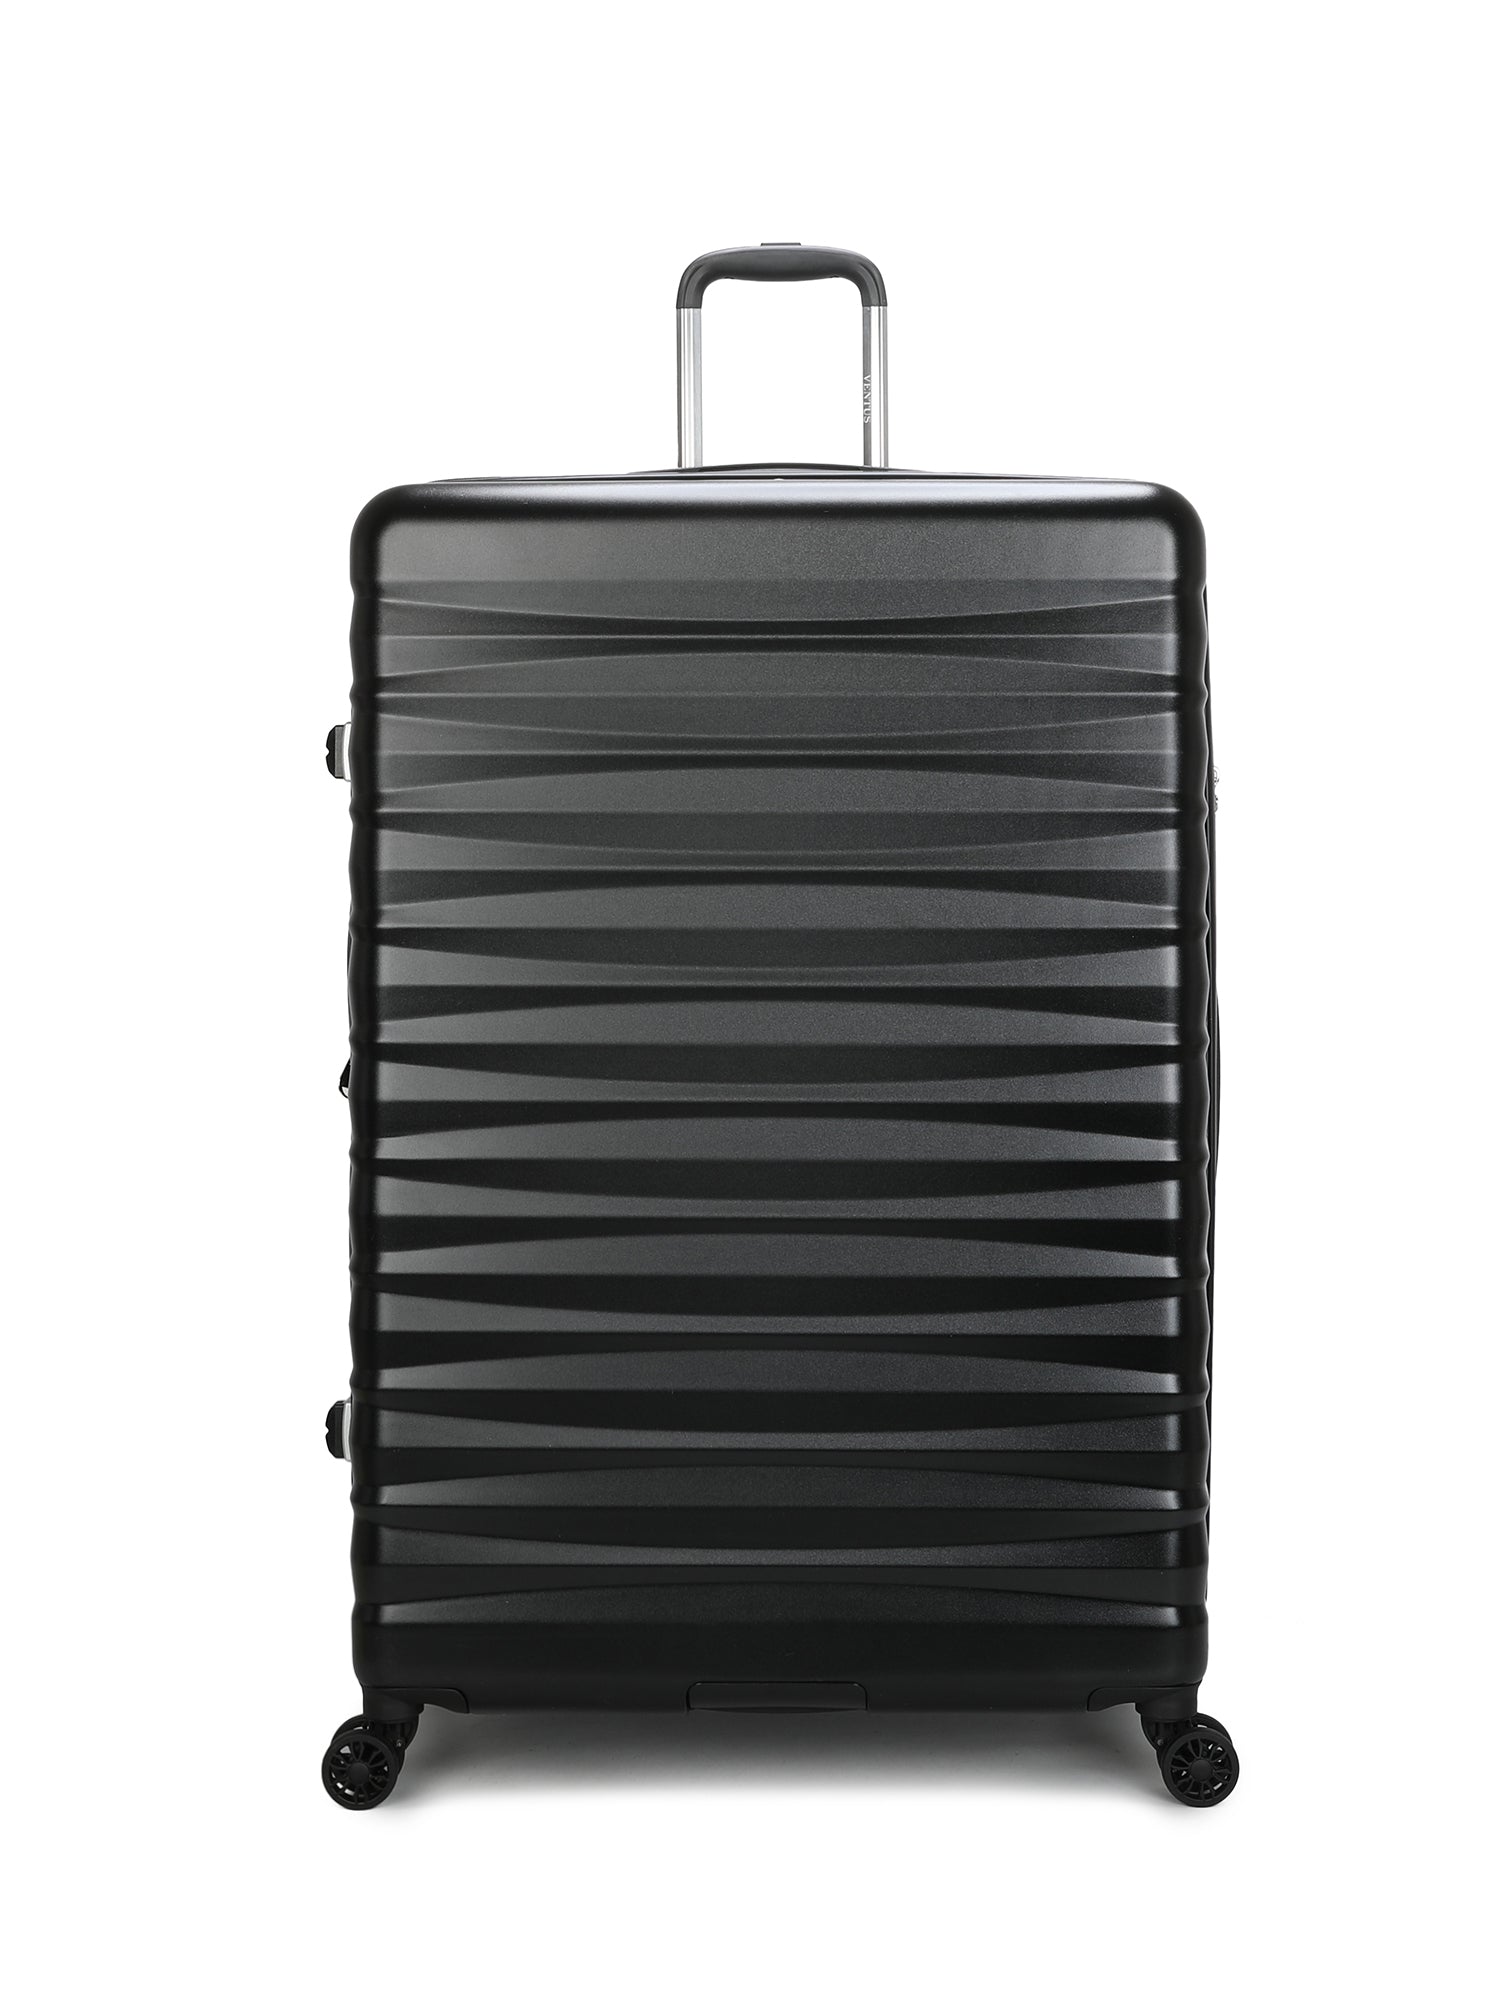 Ventus Odyssey 85cm Suitcase